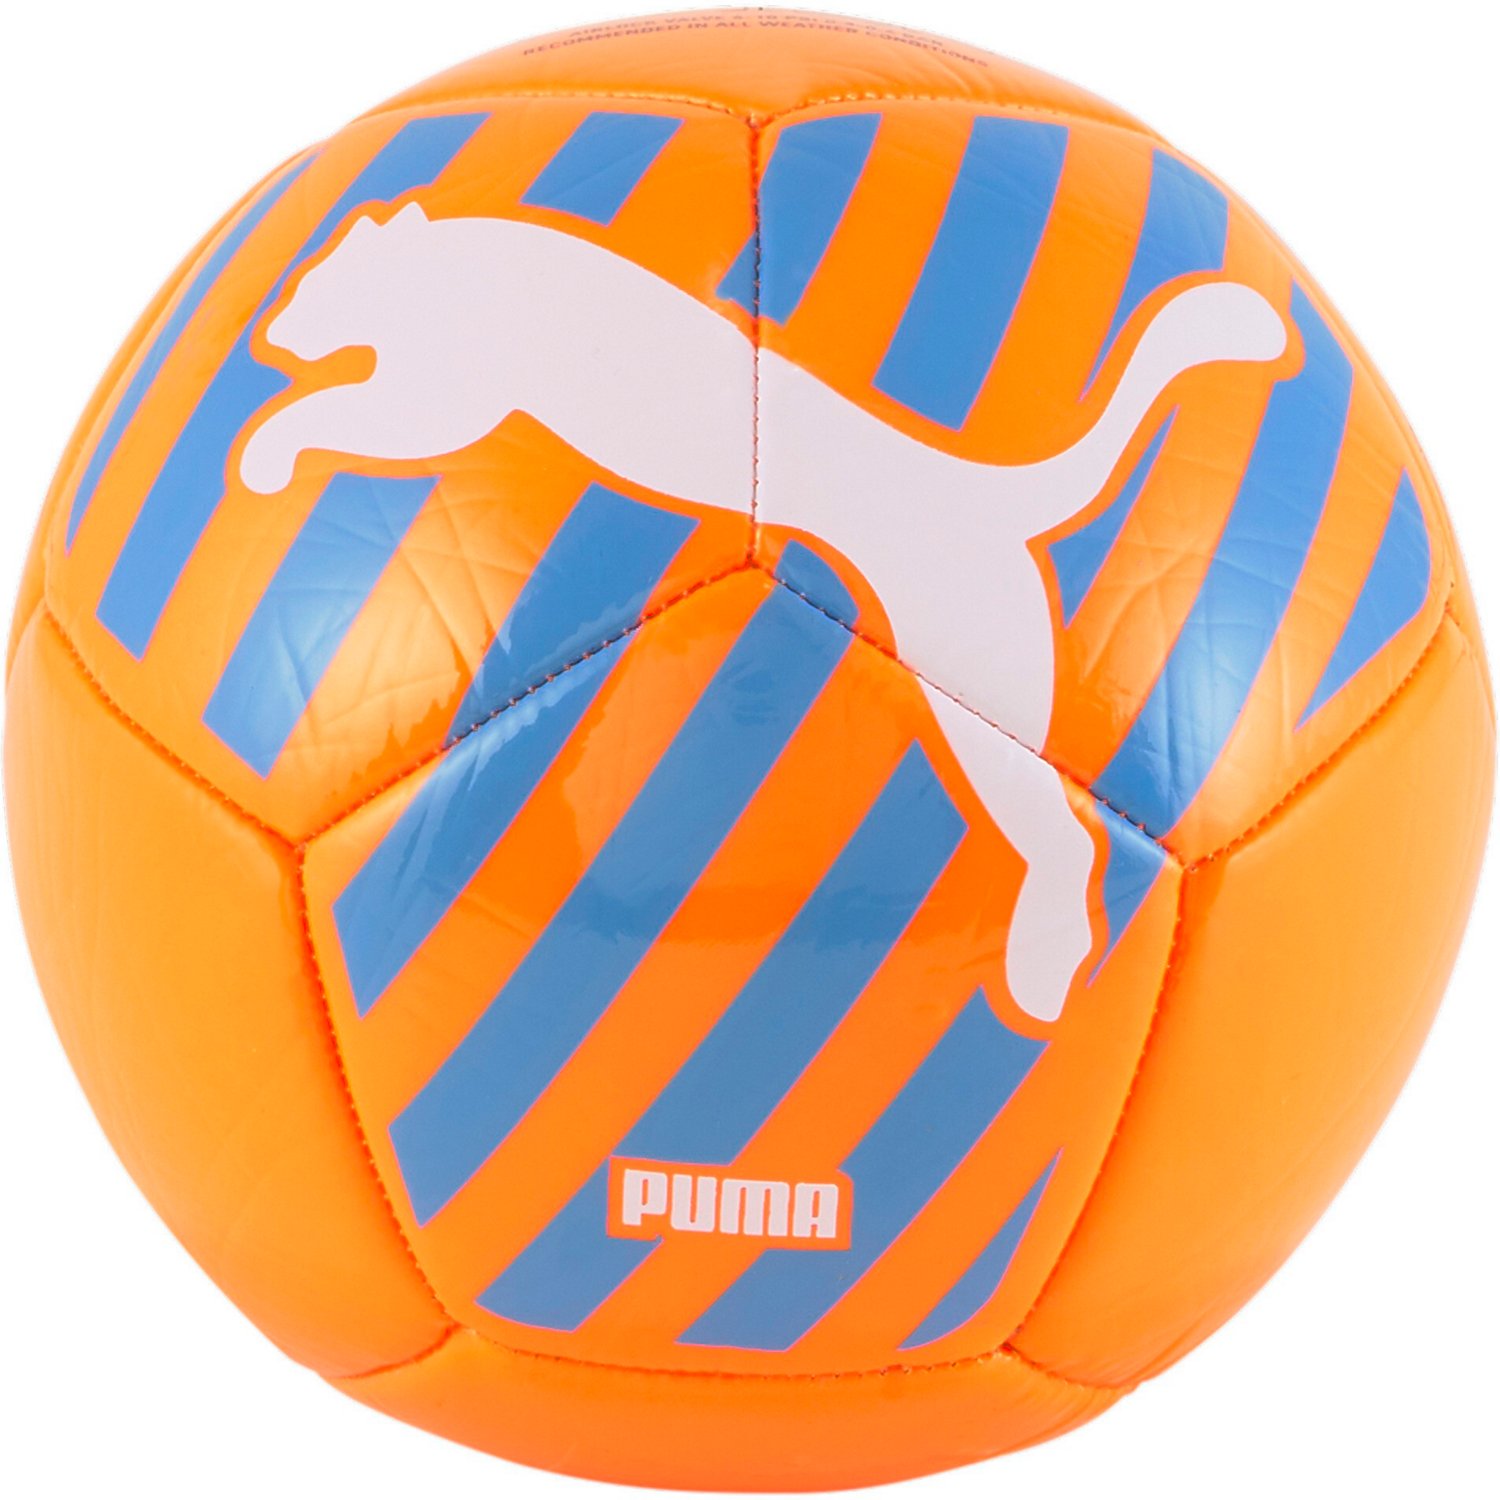 PUMA Big Cat Mini Soccer Ball